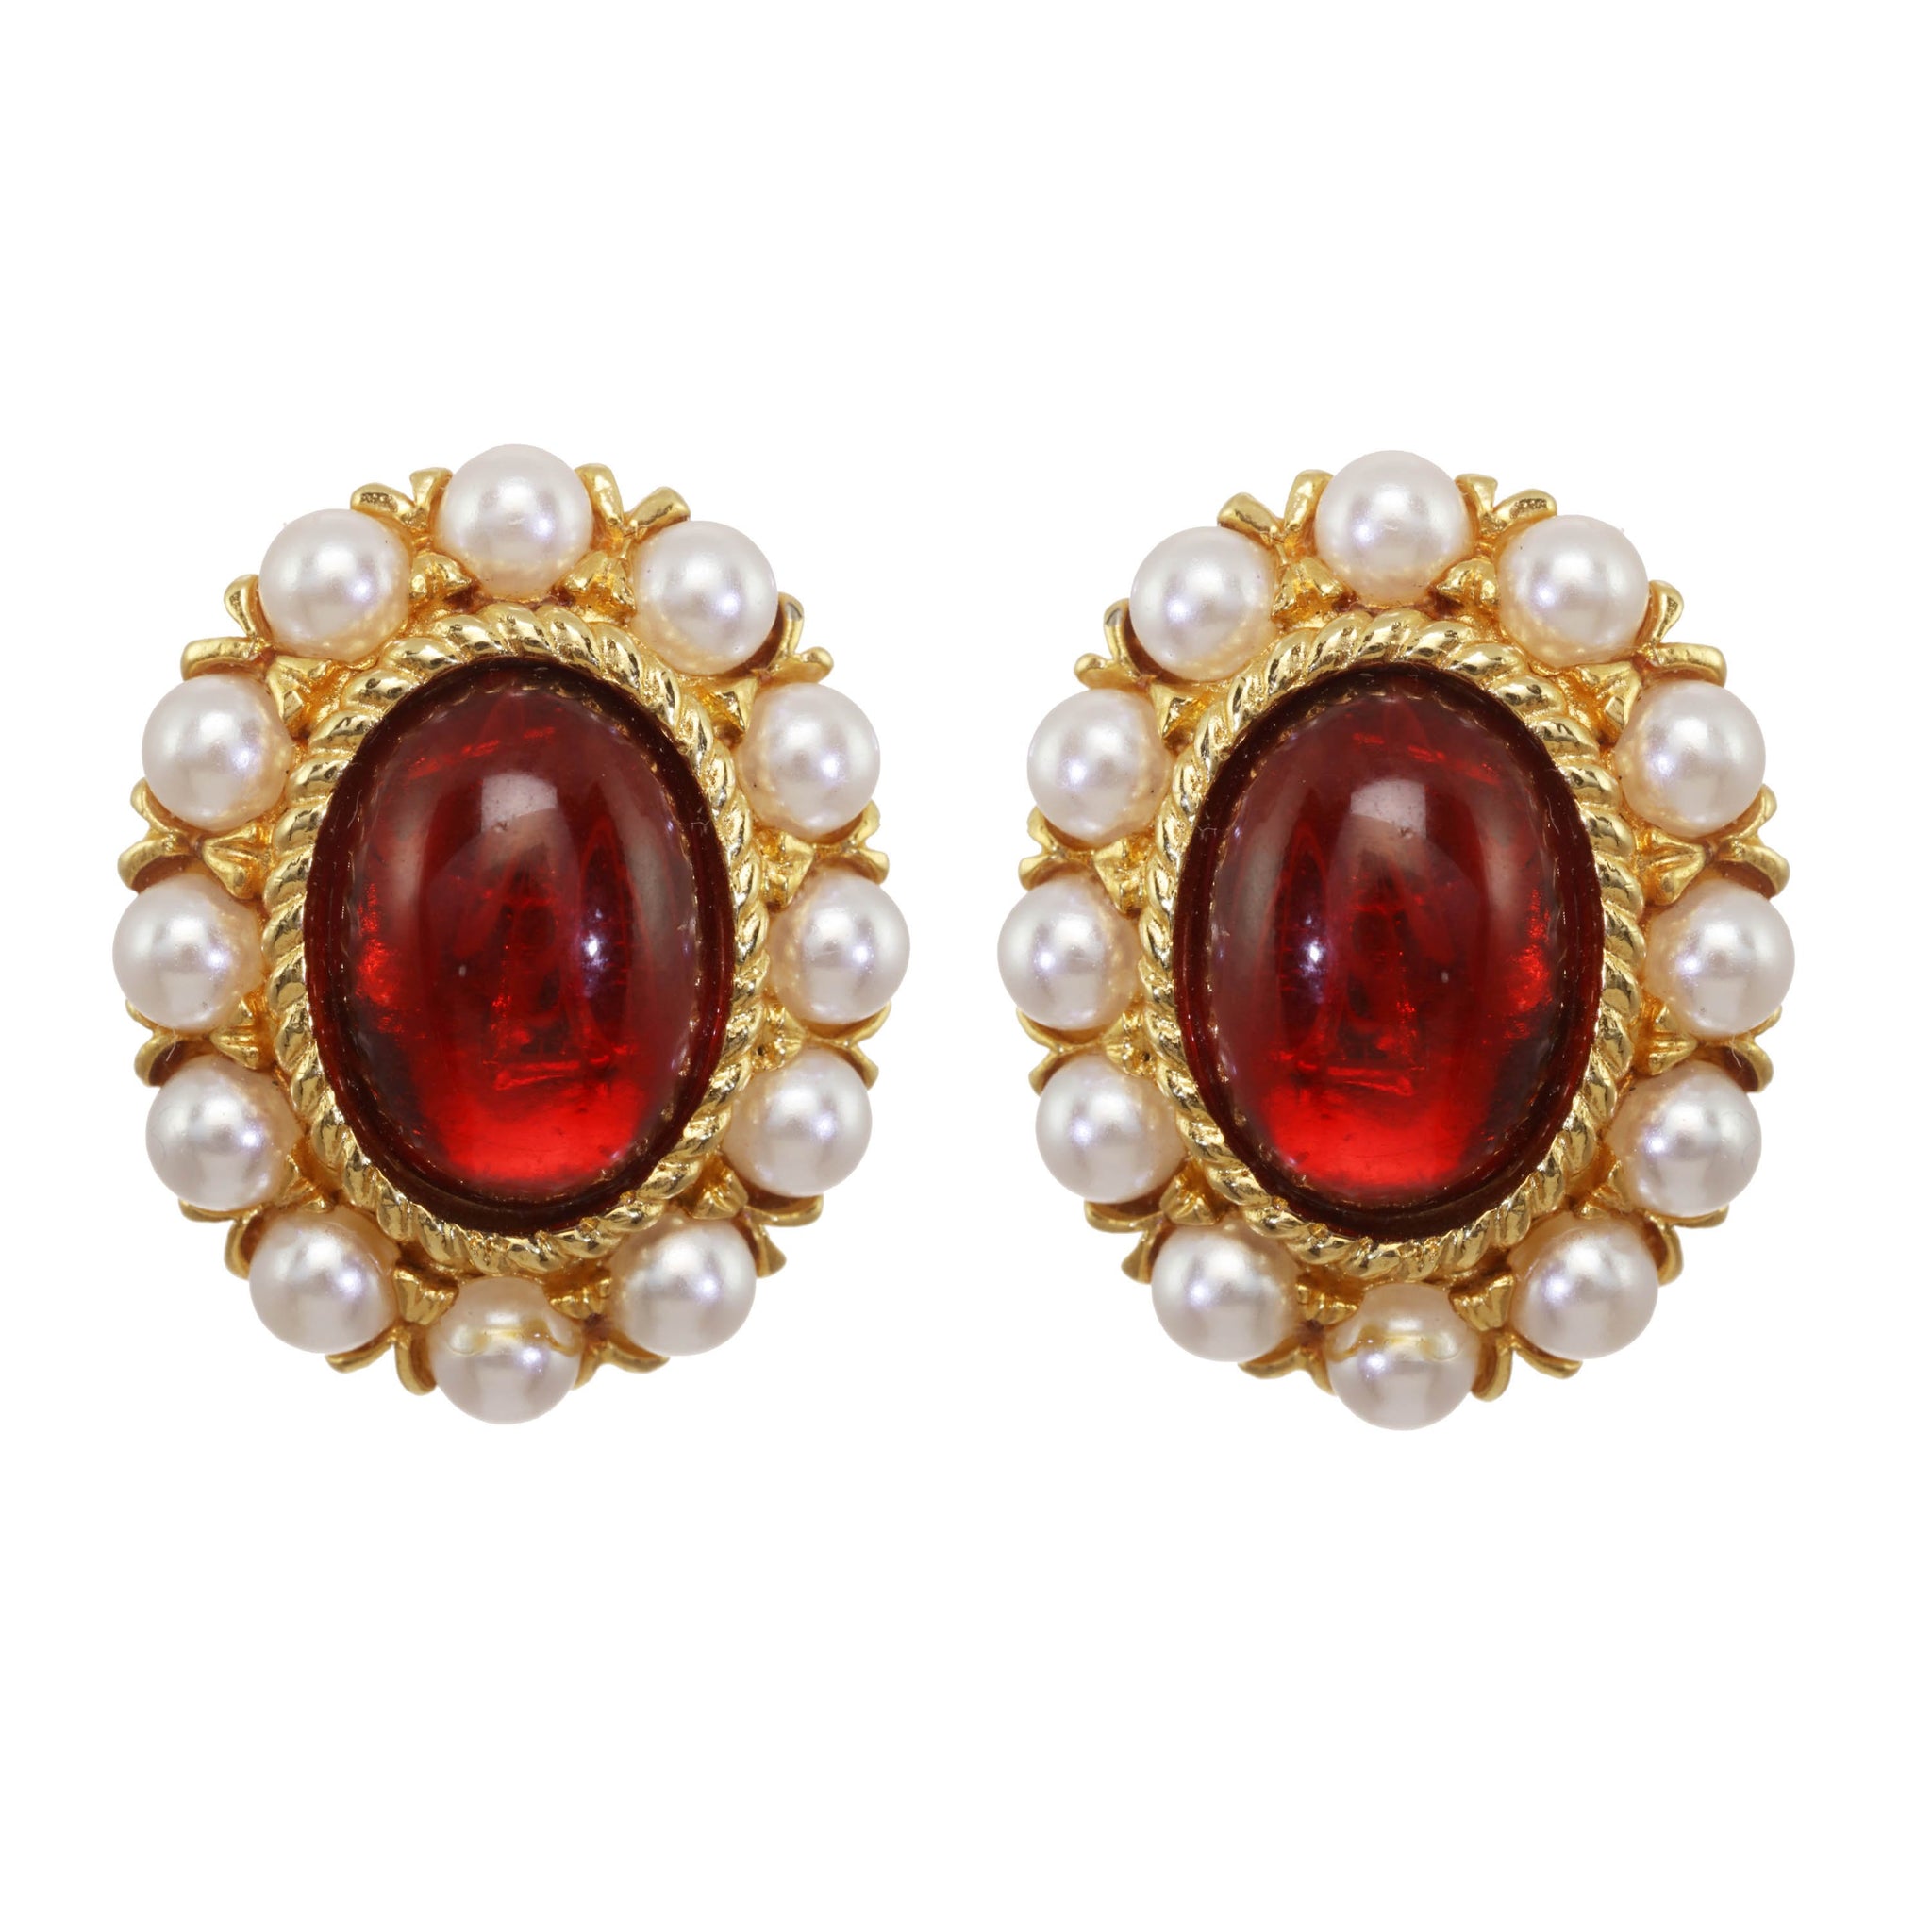 Buy Original natural ruby(manik) earrings unheated lab certified ruby stud  earrings By CEYLONMINE Online - Get 73% Off